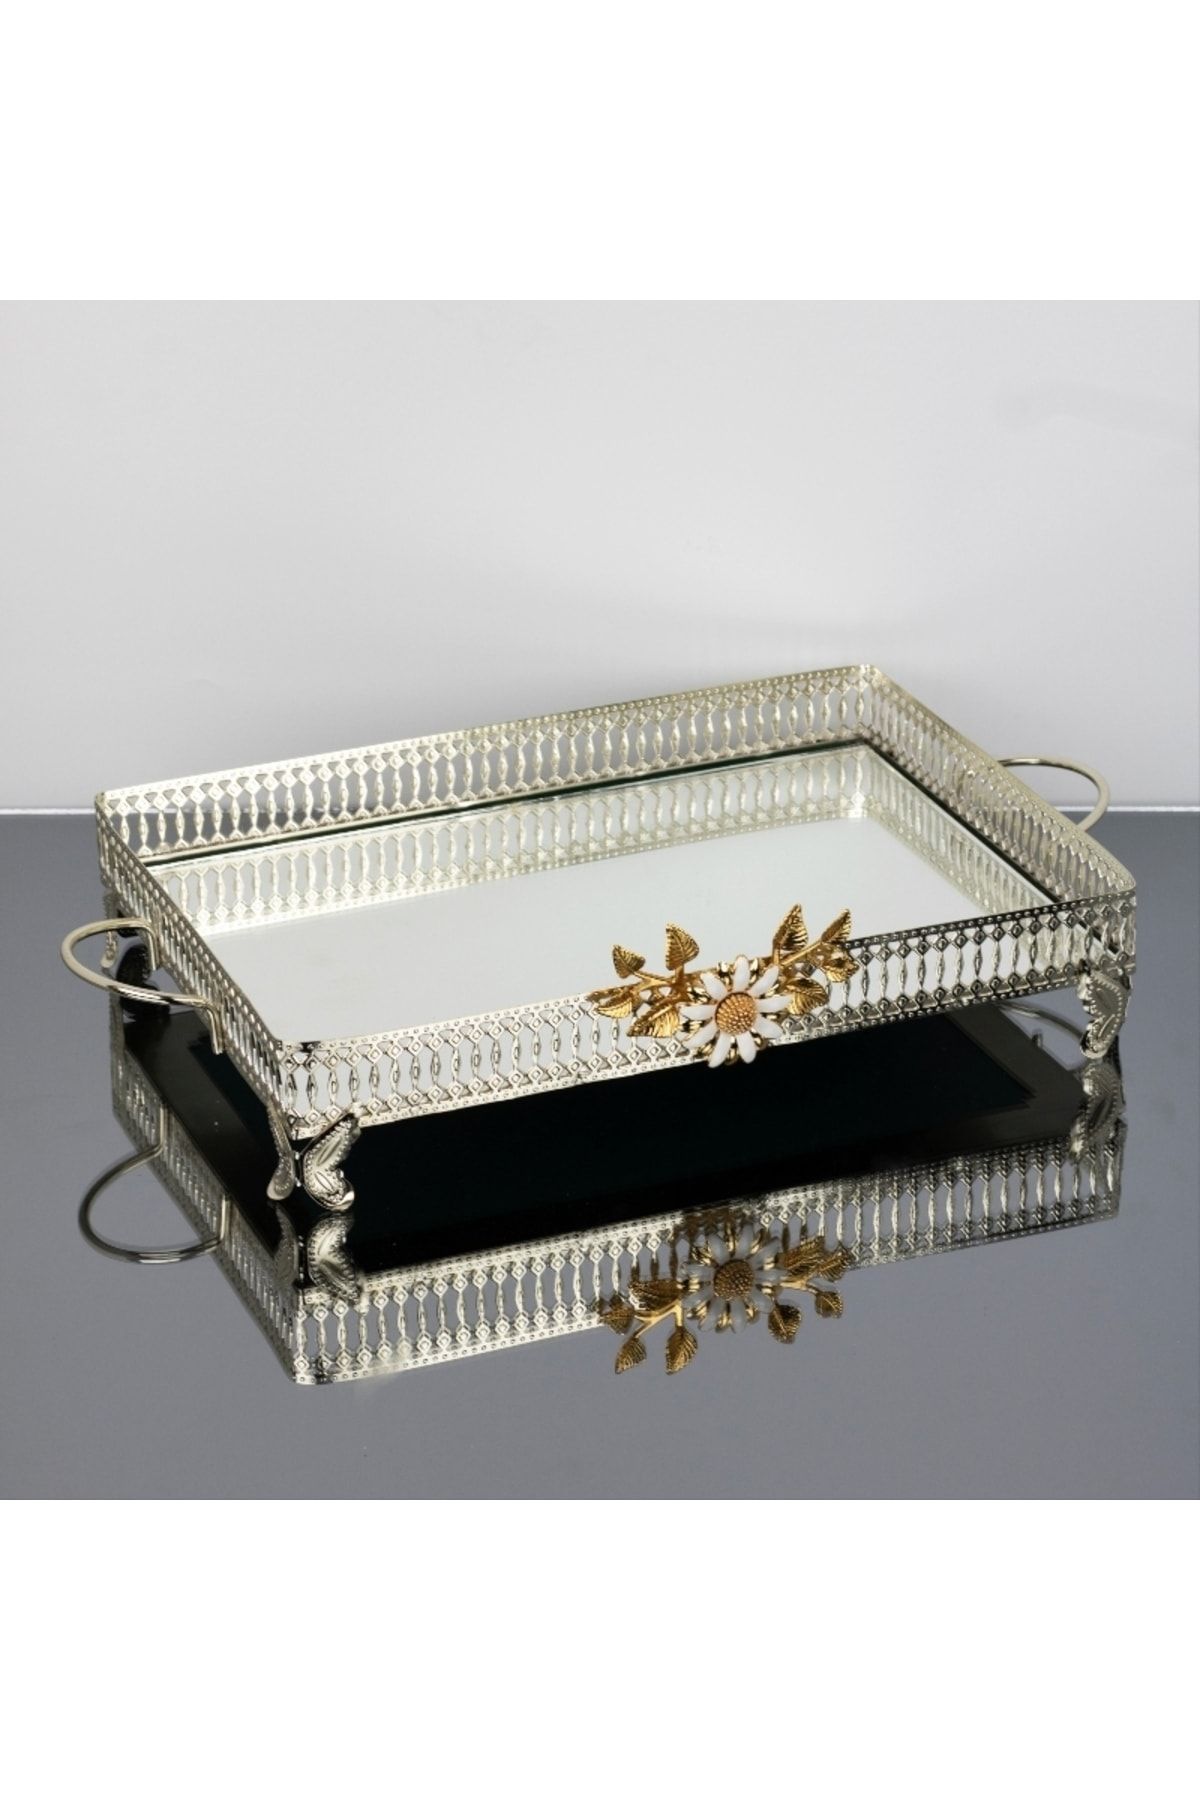 İnova Home Decor Firuze Çiçek Detaylı Gümüş Aynalı Nişan- Söz Tepsisi - Aynalı Tepsi 37 X 26 Cm - Büyük Boy